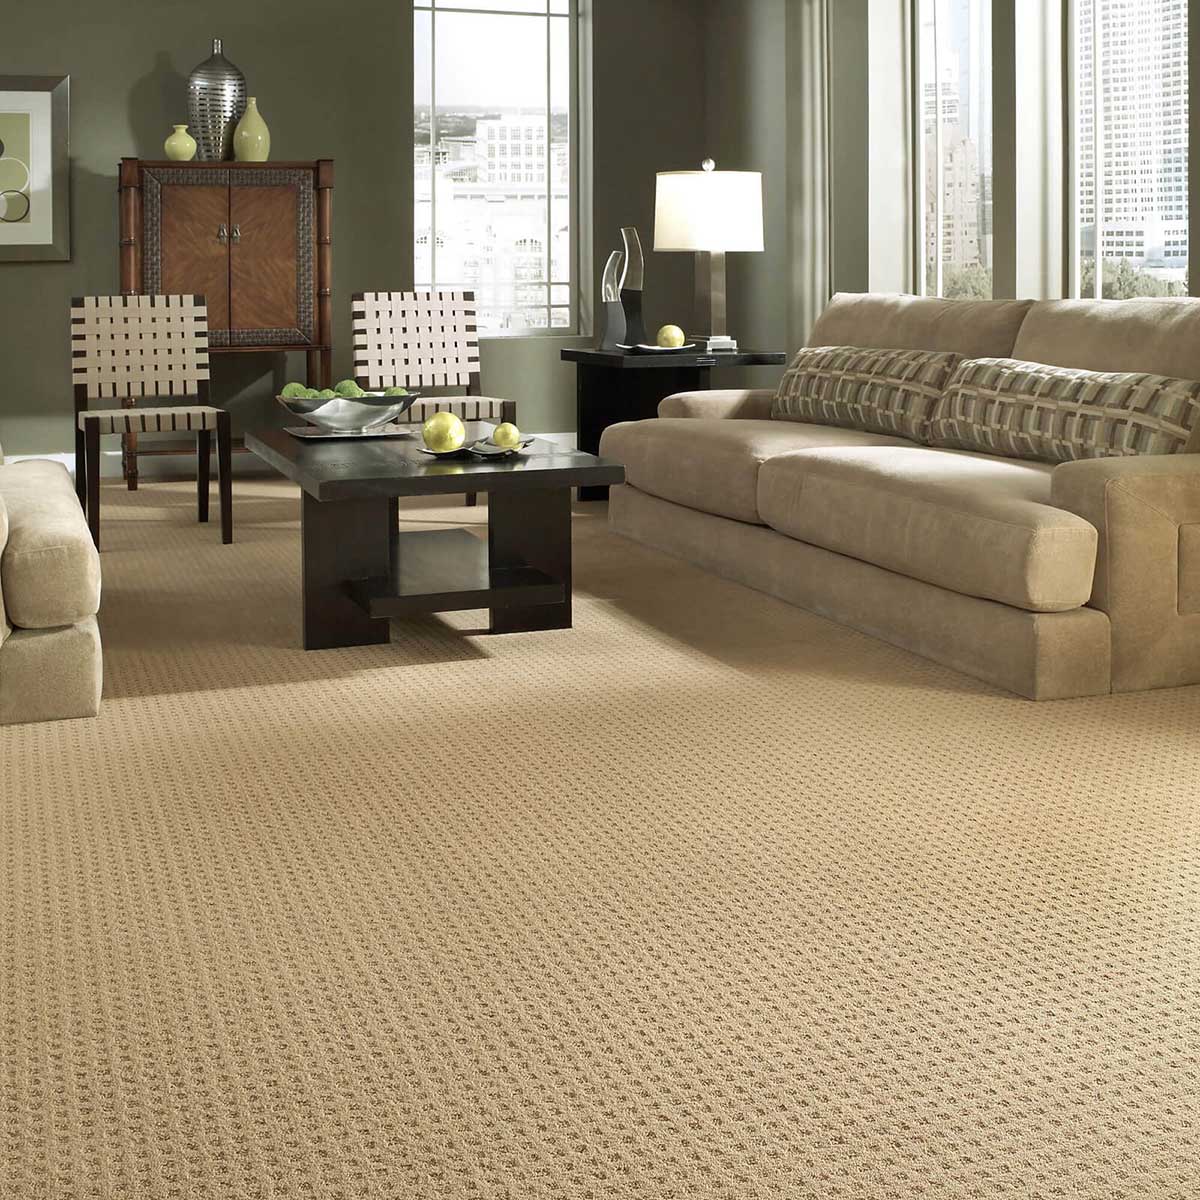 Living room Carpet | York Carpetland USA 